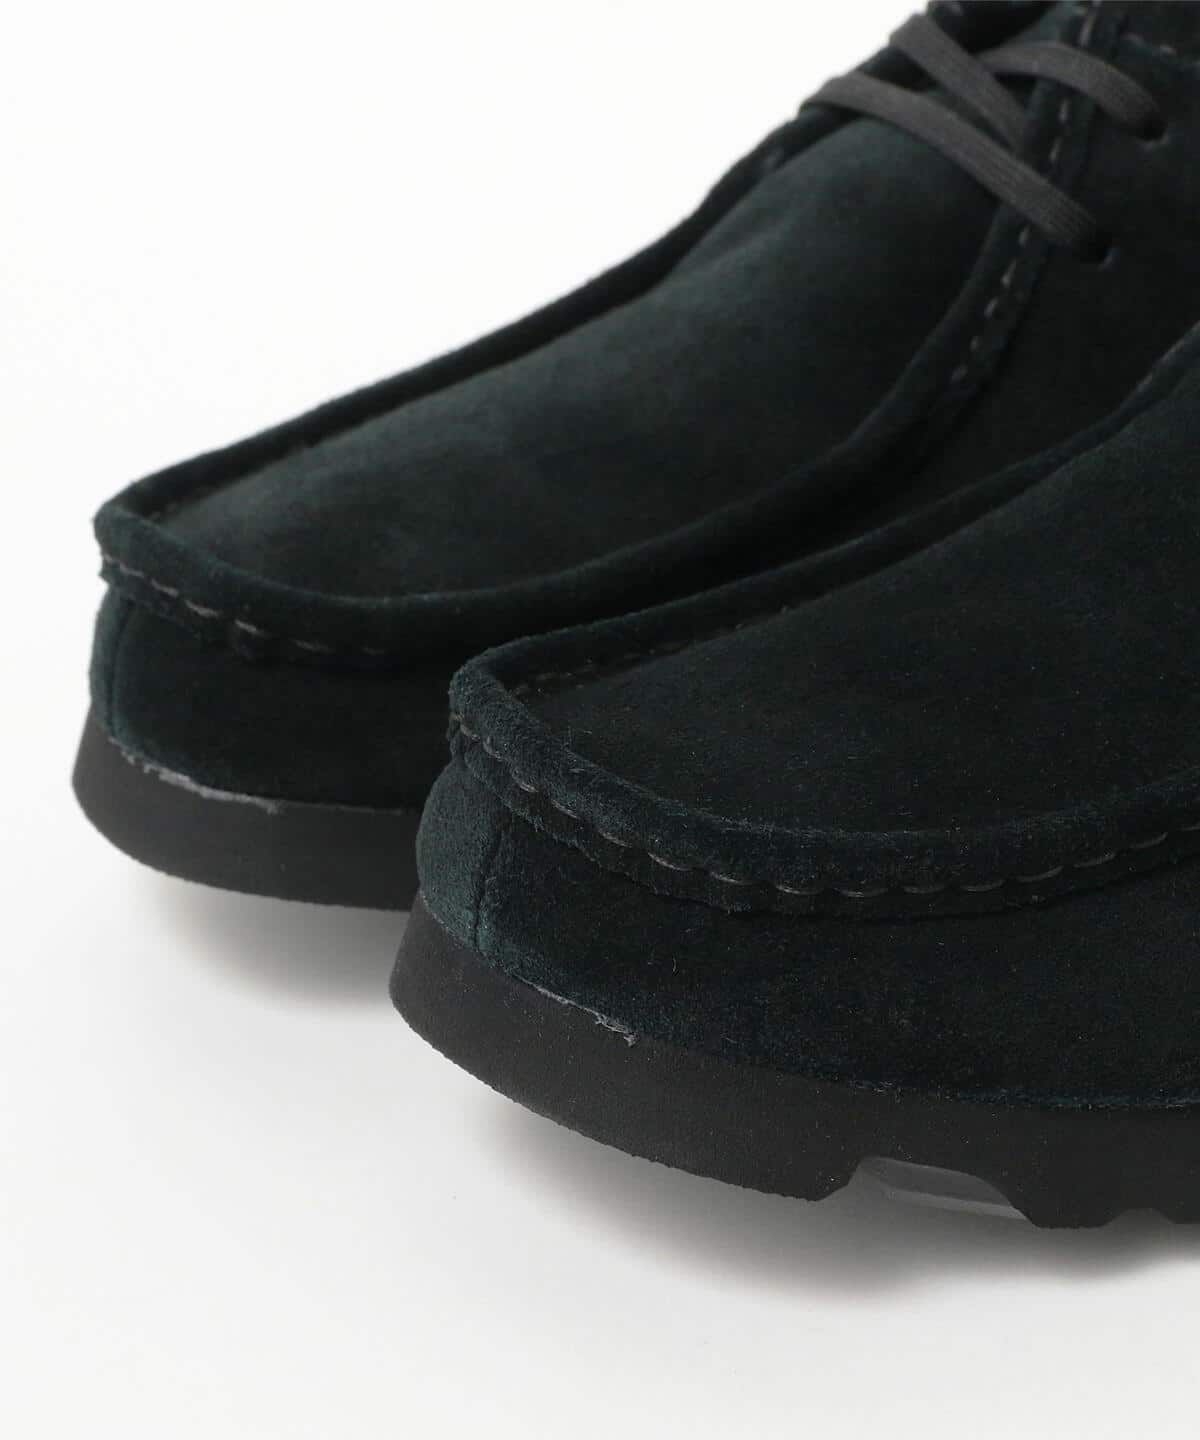 BEAMS CLARKS ORIGINALS / Wallabee GORE-TEX(R BEAMS (shoes boots 